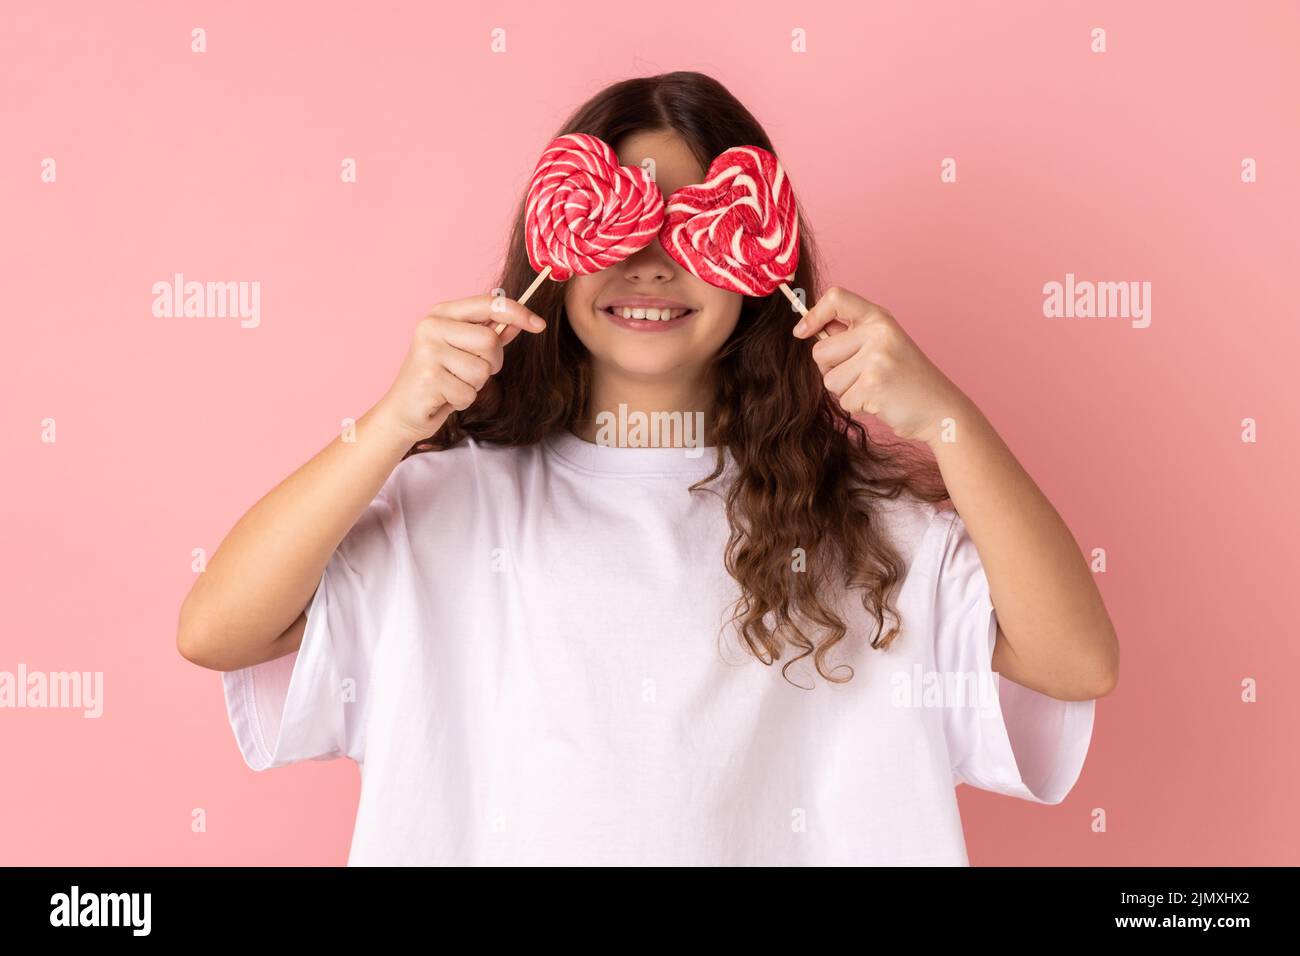 Retrato de niña con una camiseta blanca que cubre los ojos con caramelos en forma de corazón y sonriendo alegremente, posando con los labios de la puta. Estudio de interior grabado aislado sobre fondo rosa. Foto de stock